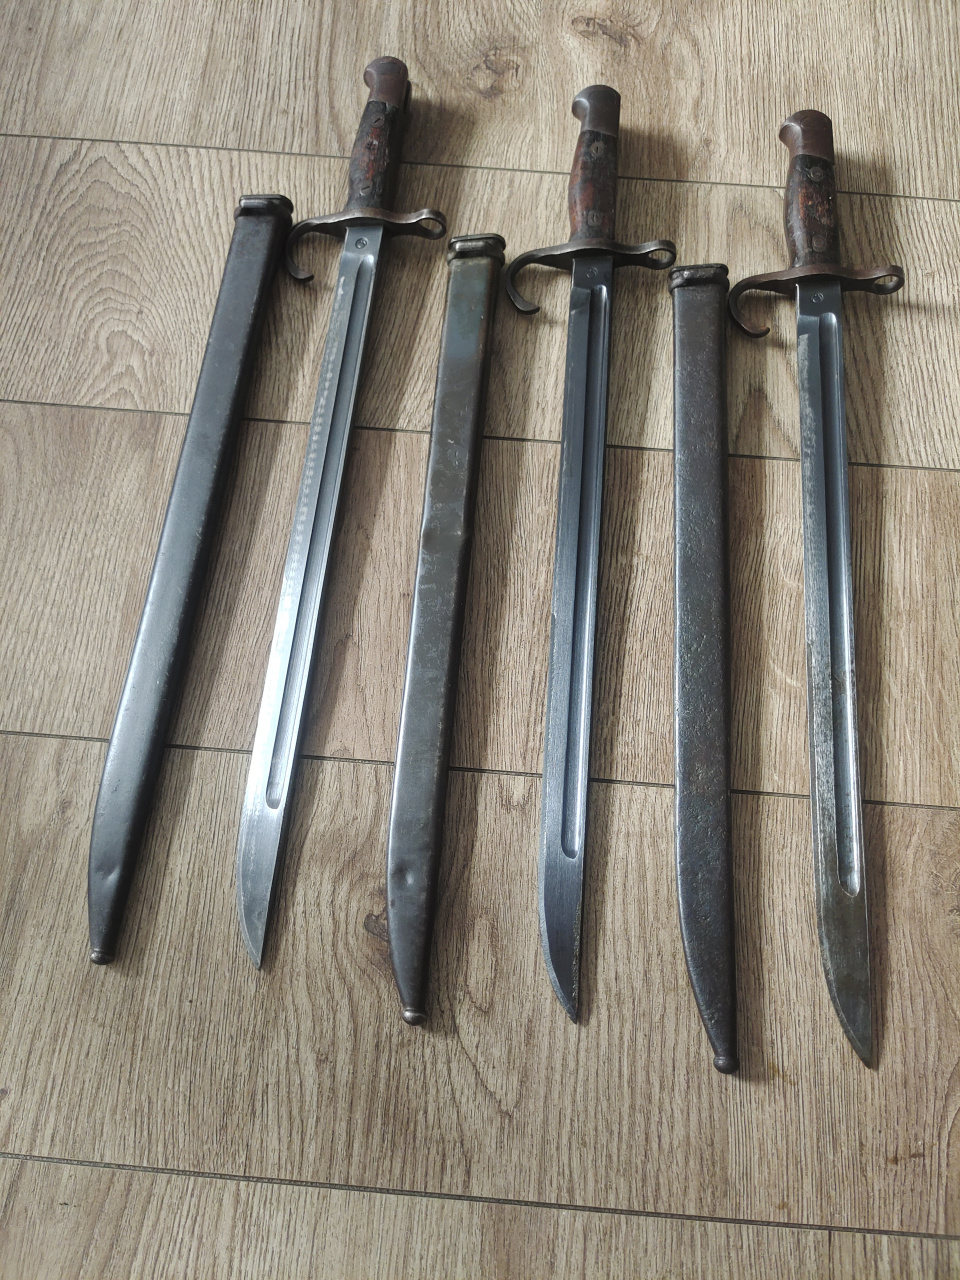 日本明治30年式刺刀,单标的名古屋兵工厂一组3把,全烤蓝近未使用过!